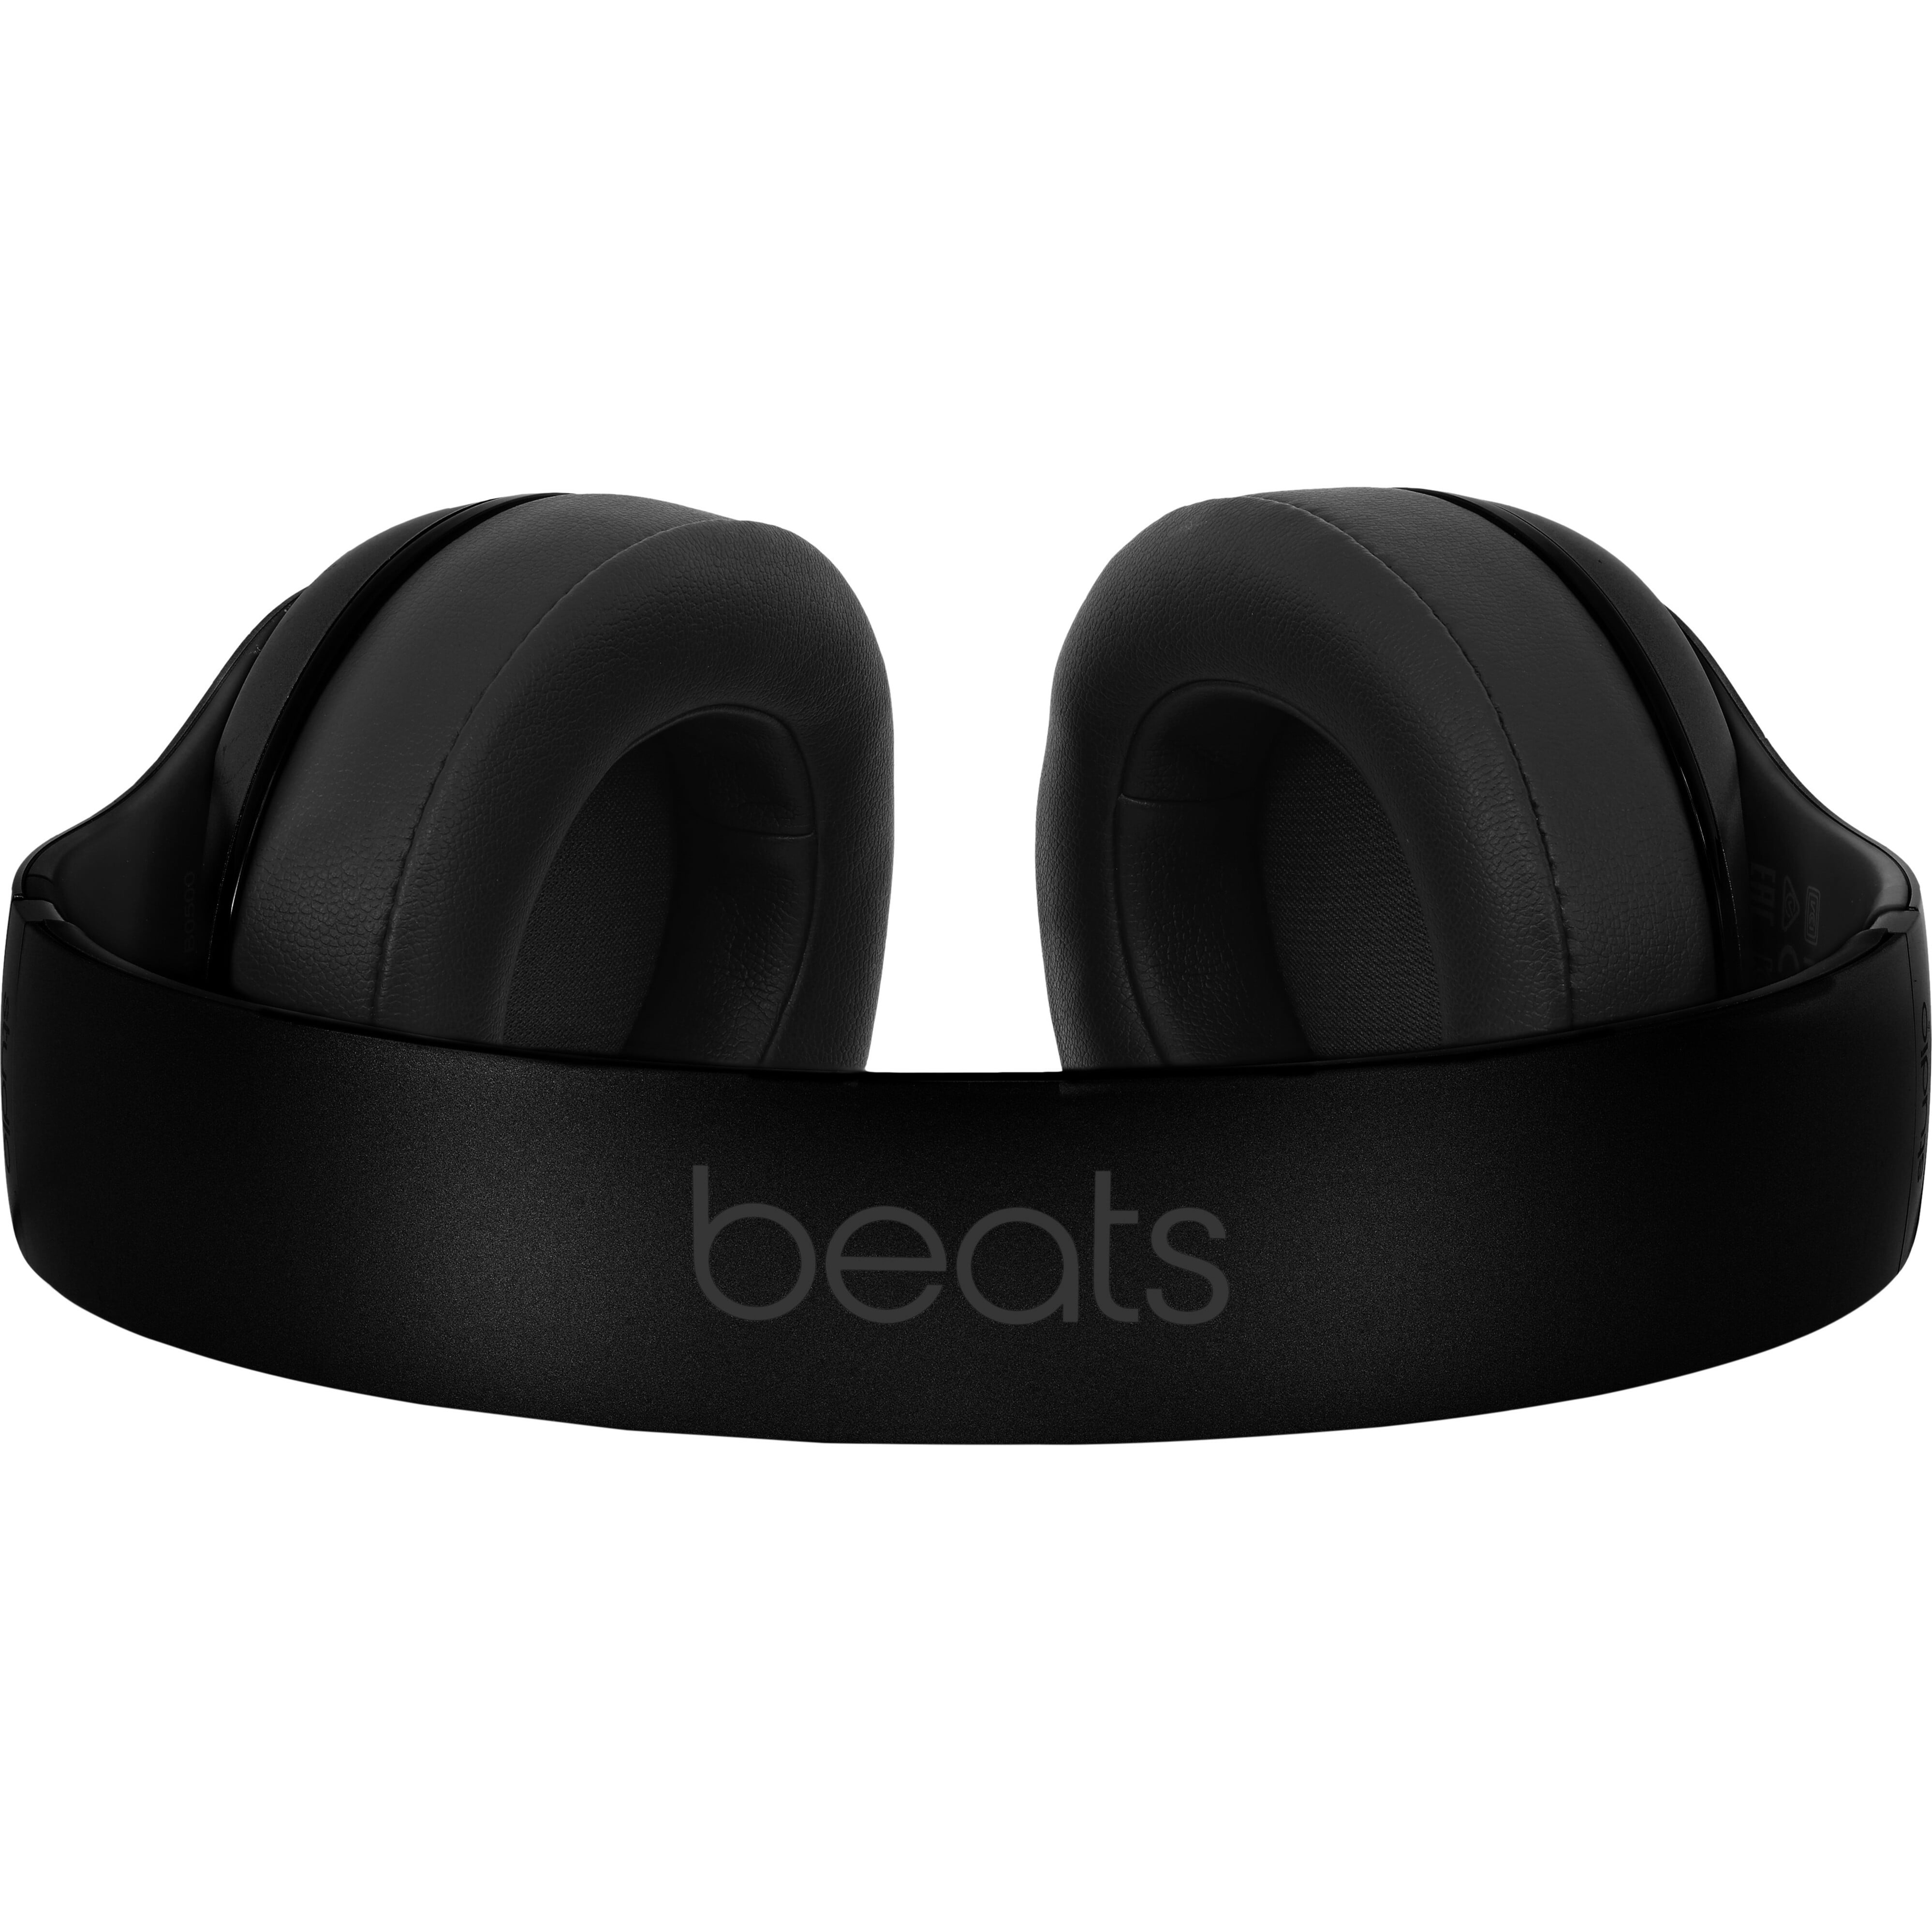 オーディオ機器 ヘッドフォン Beats by Dr. Dre Studio Wireless Over-Ear Headphones - Walmart.com